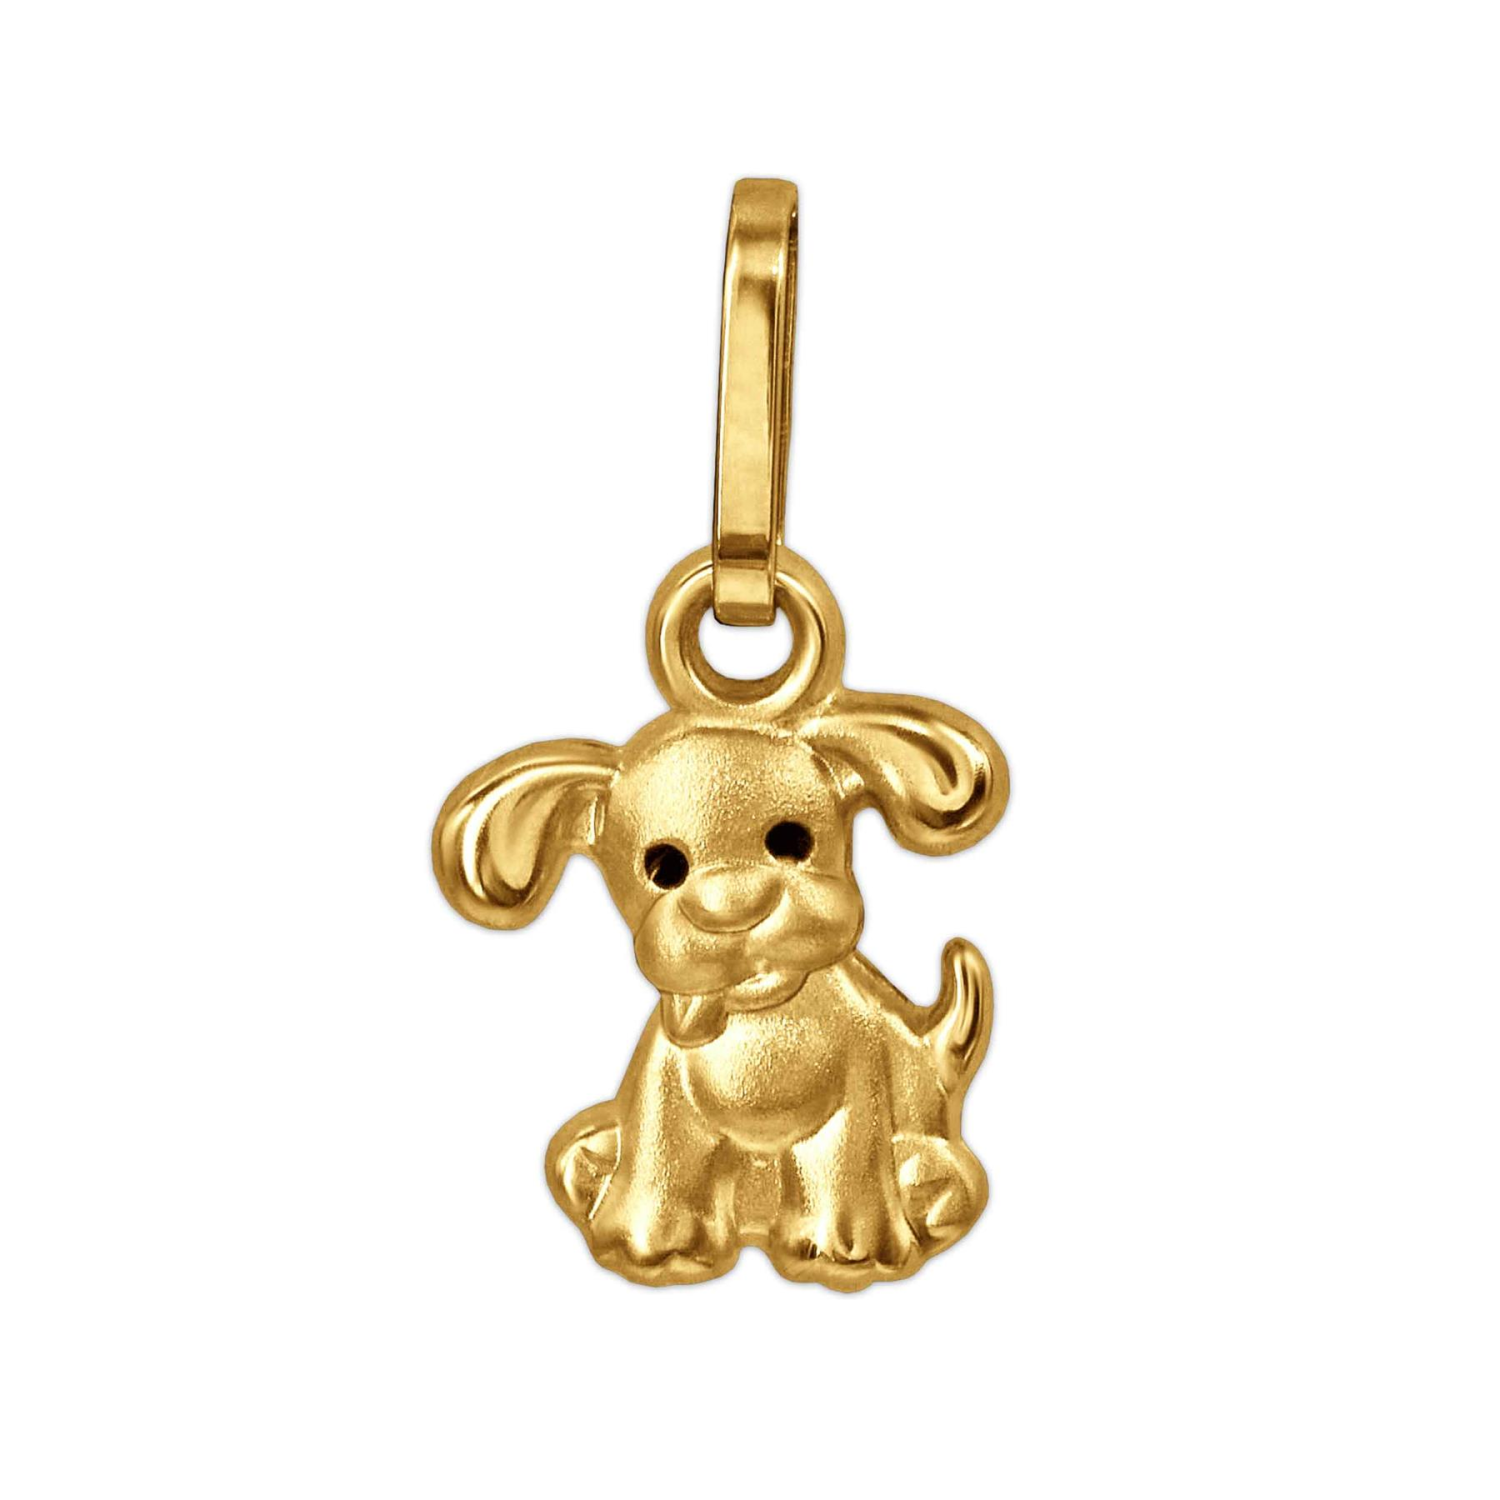 Goldener kleiner Anhänger Mini Hund 8 mm mit Augen schwarz lackiert 333 GOLD 8 KARAT